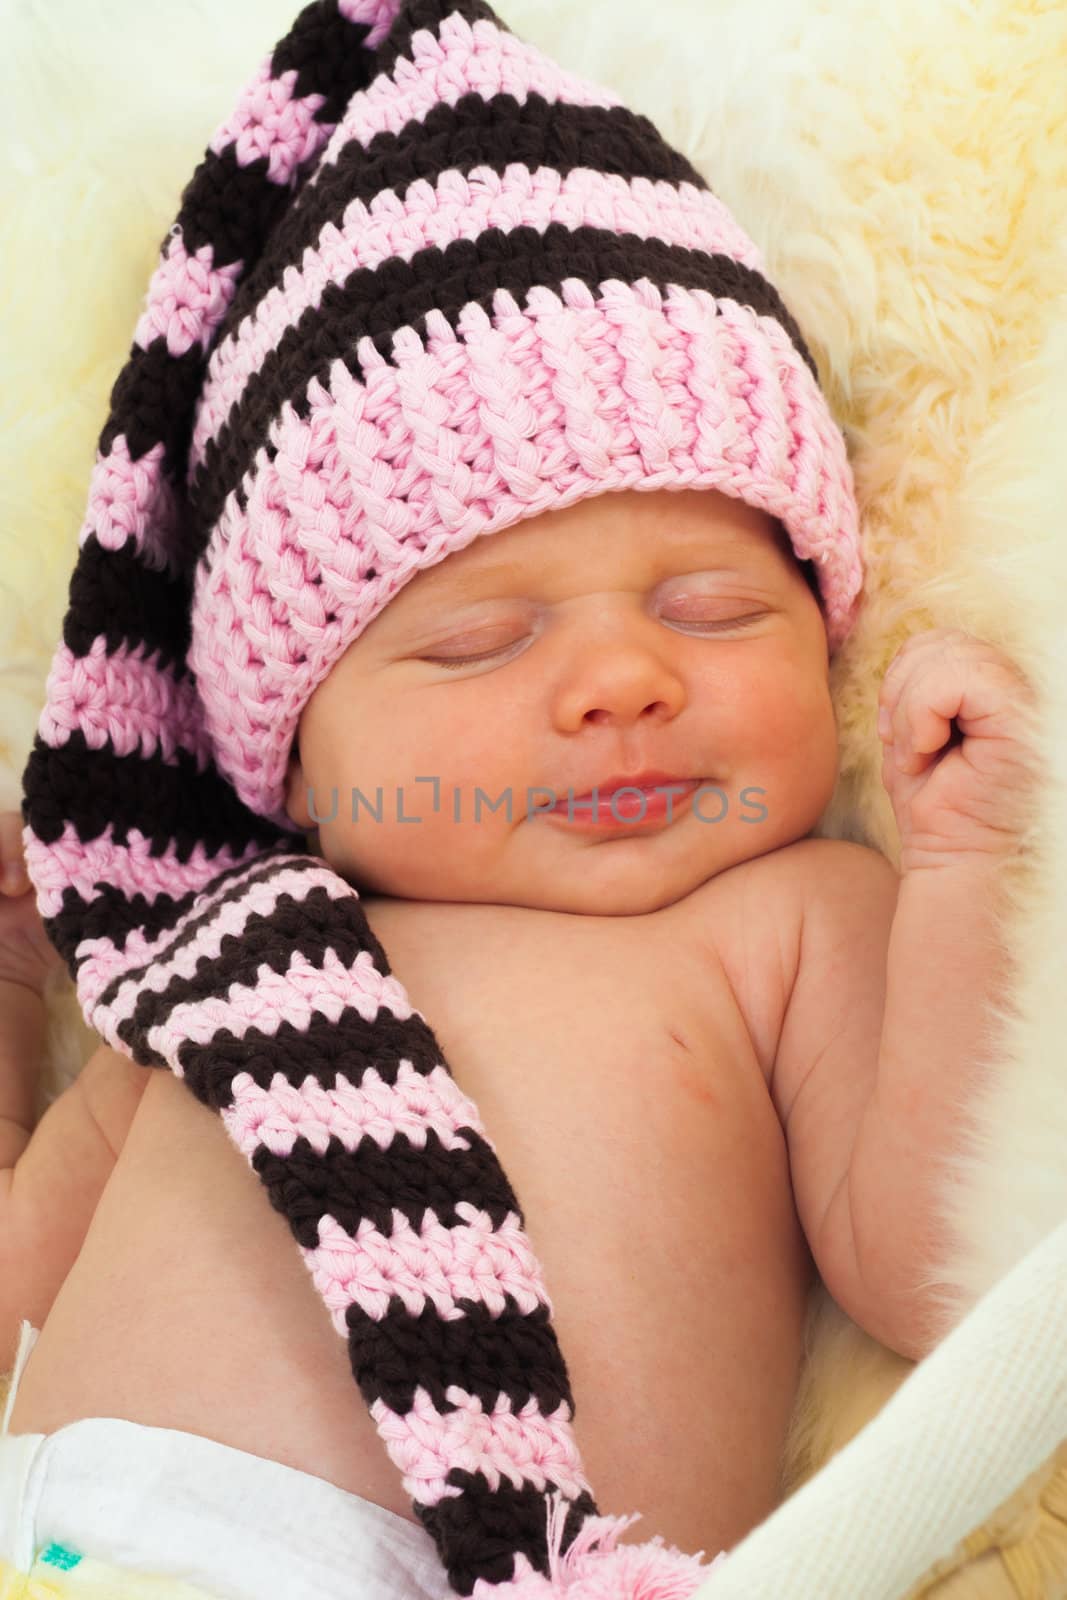 infant sleeping on a white sheepskin in a wicker basket.